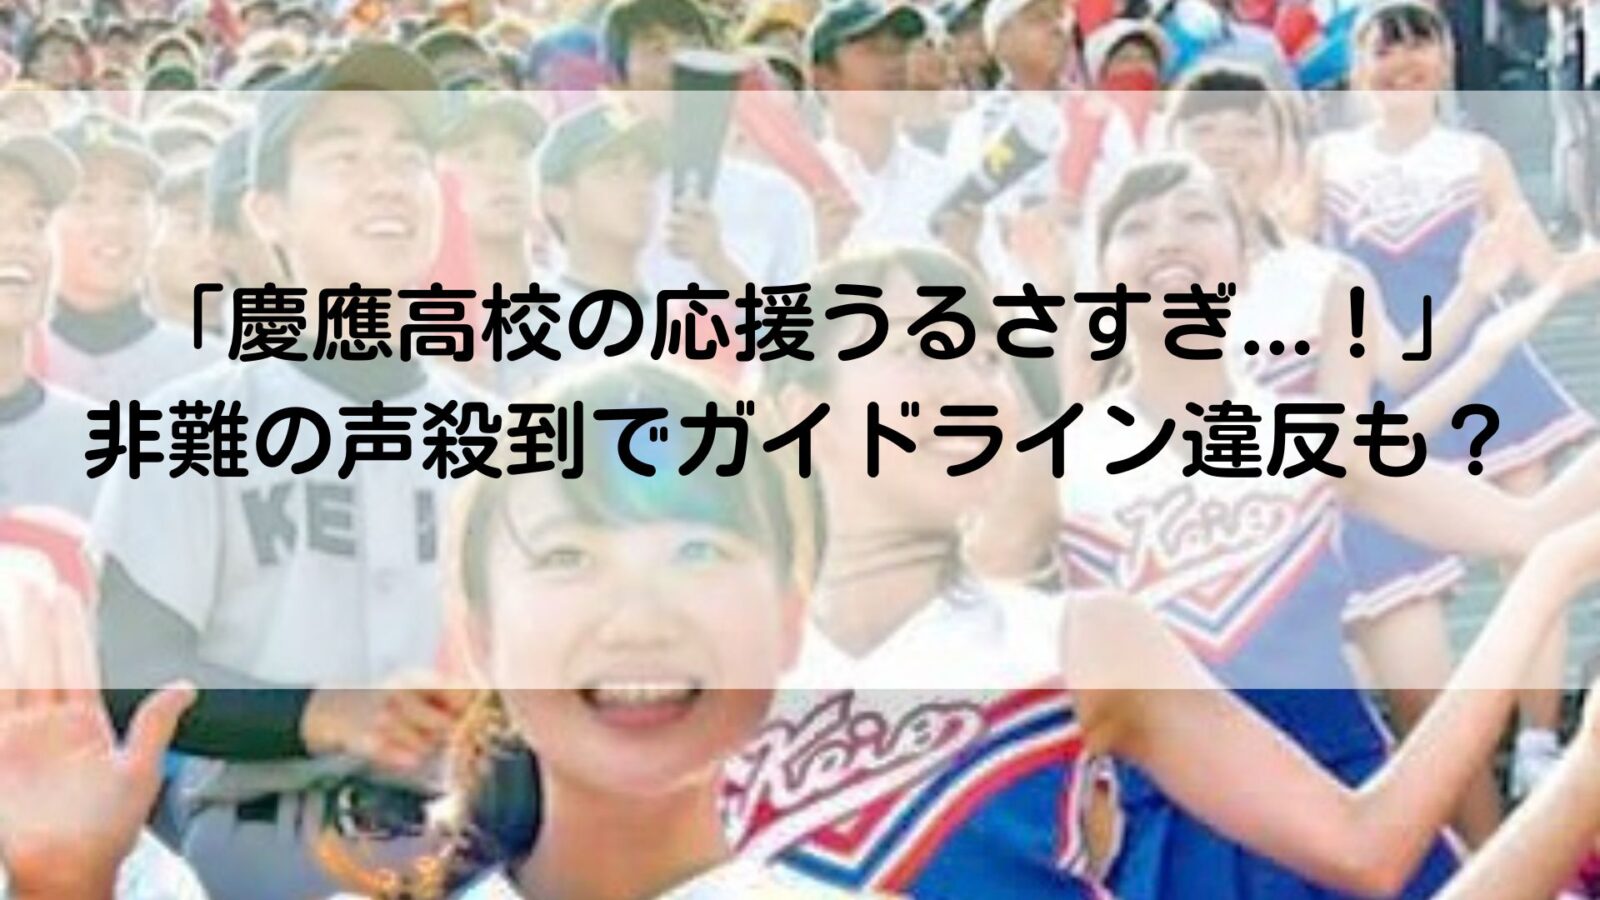 慶応高校の記事のアイキャッチ画像